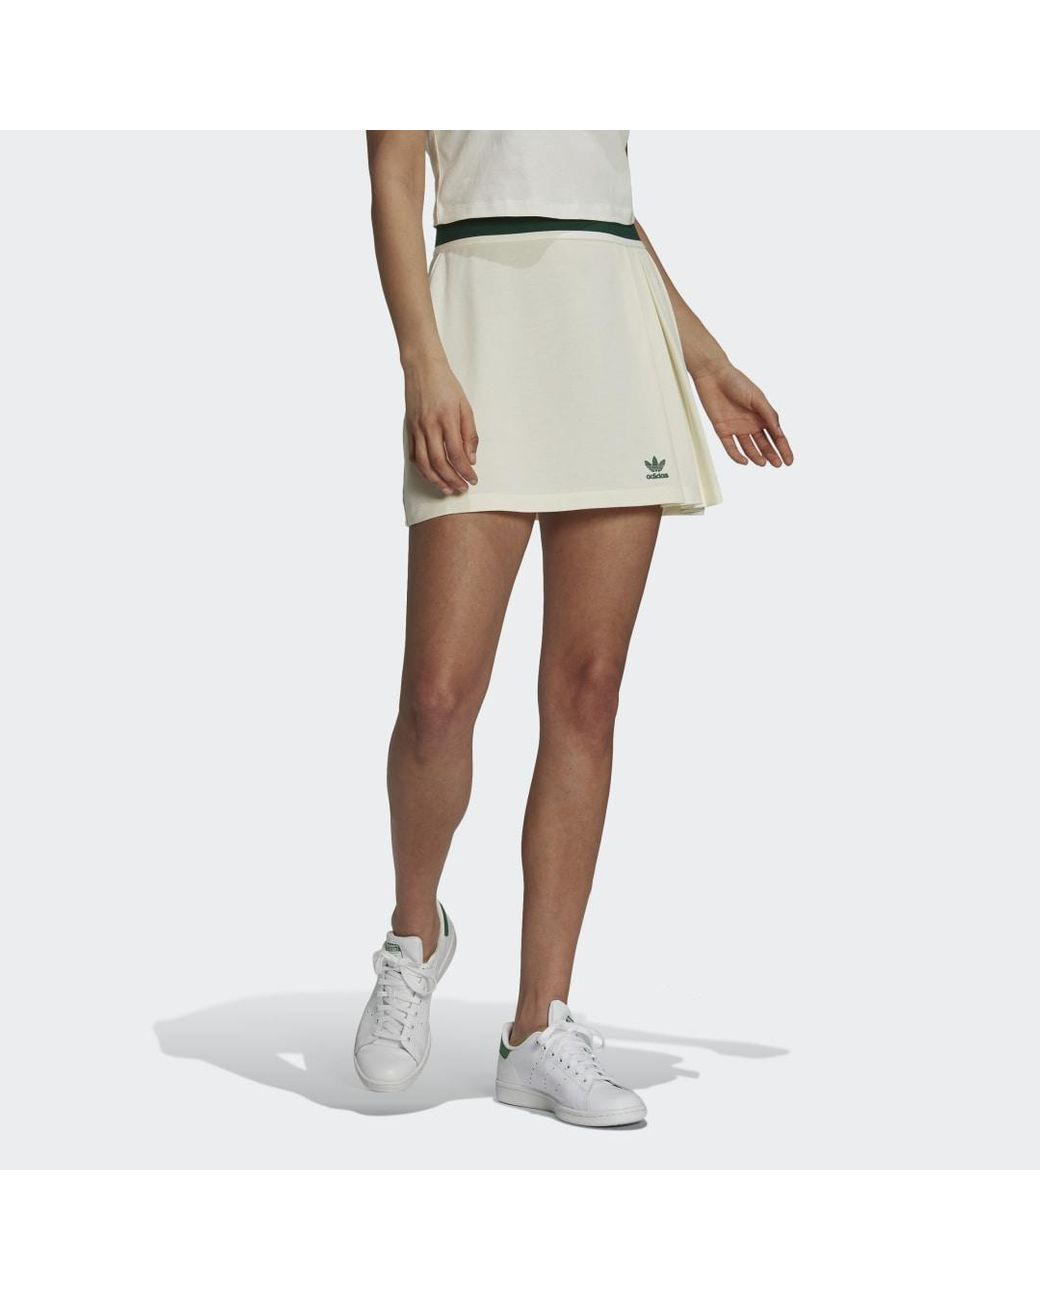 positie Absoluut Rudyard Kipling adidas Tennis Luxe Tennis Rok in het Wit | Lyst NL